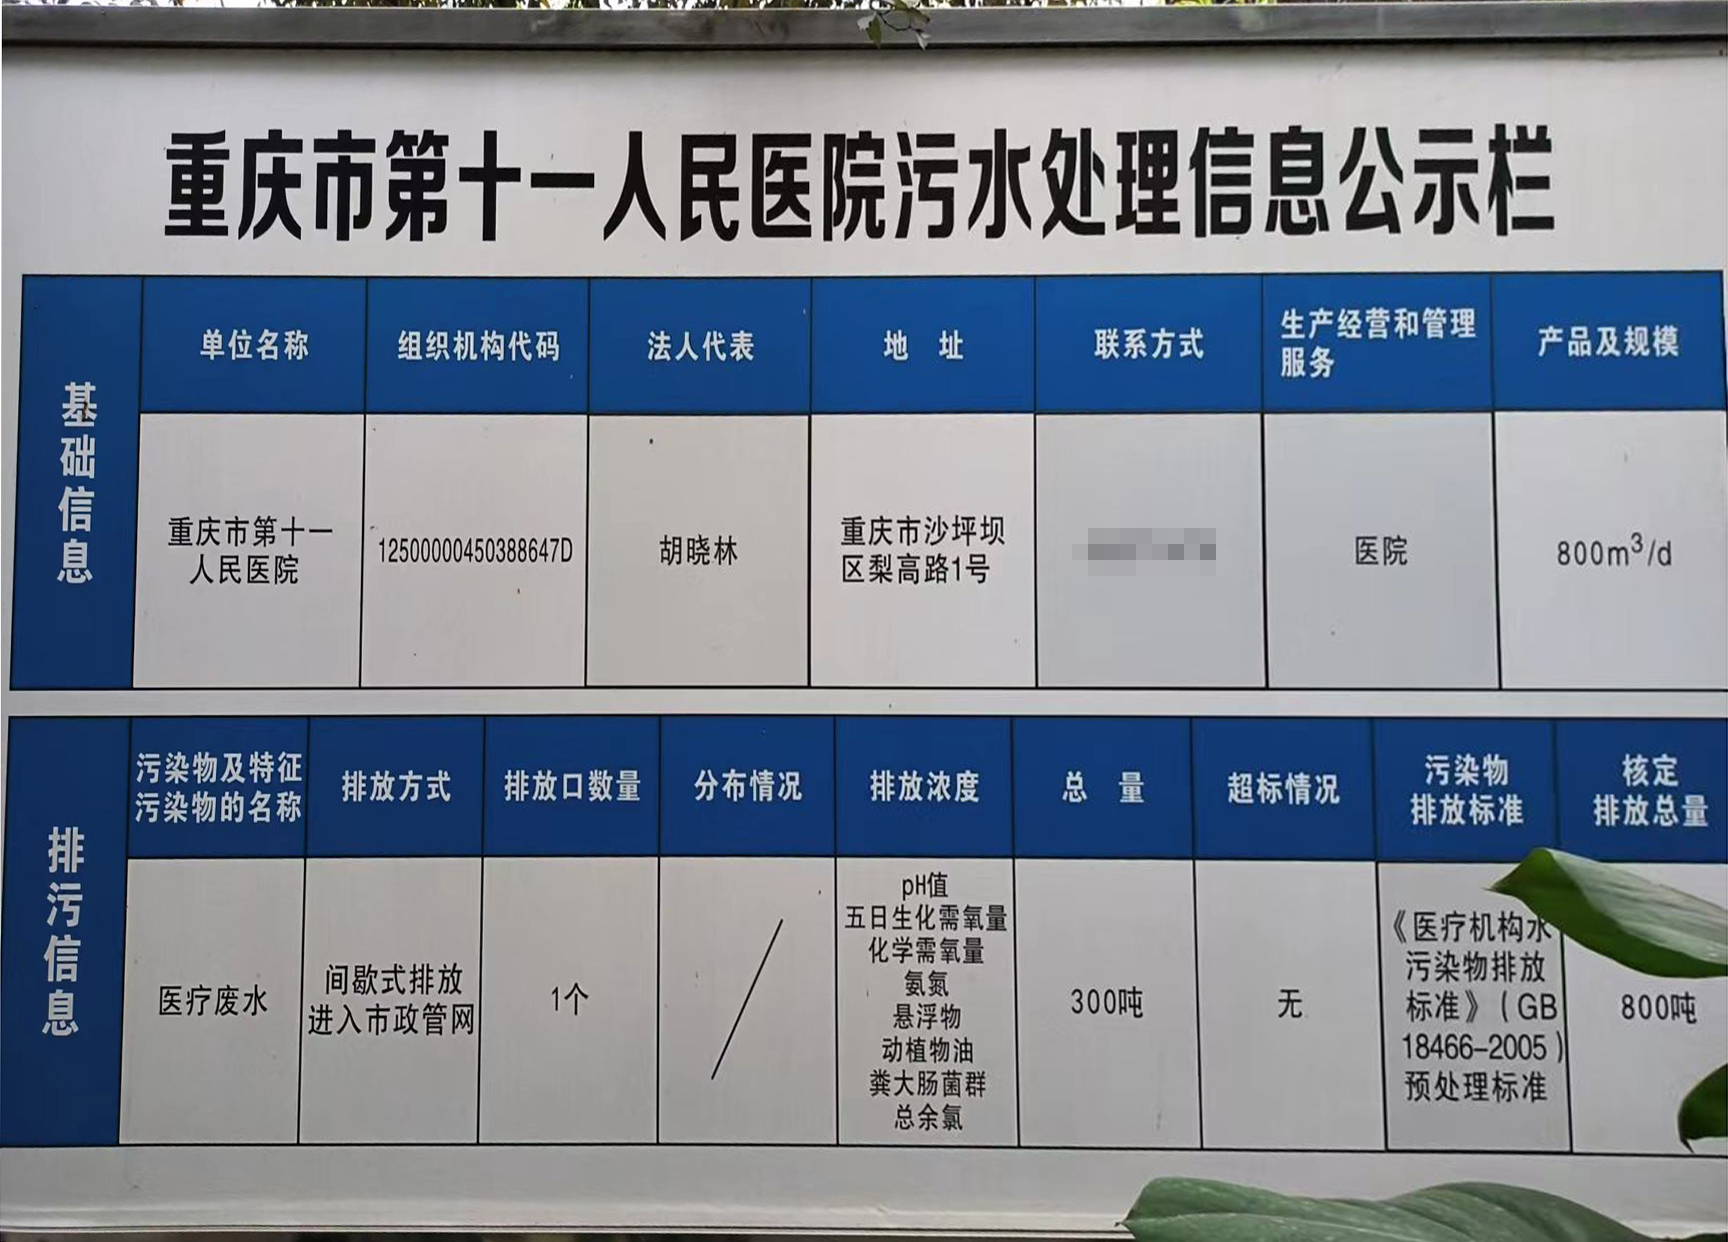 重庆污水处理站运维、污水站第三方运营、污水处理运营外包服务